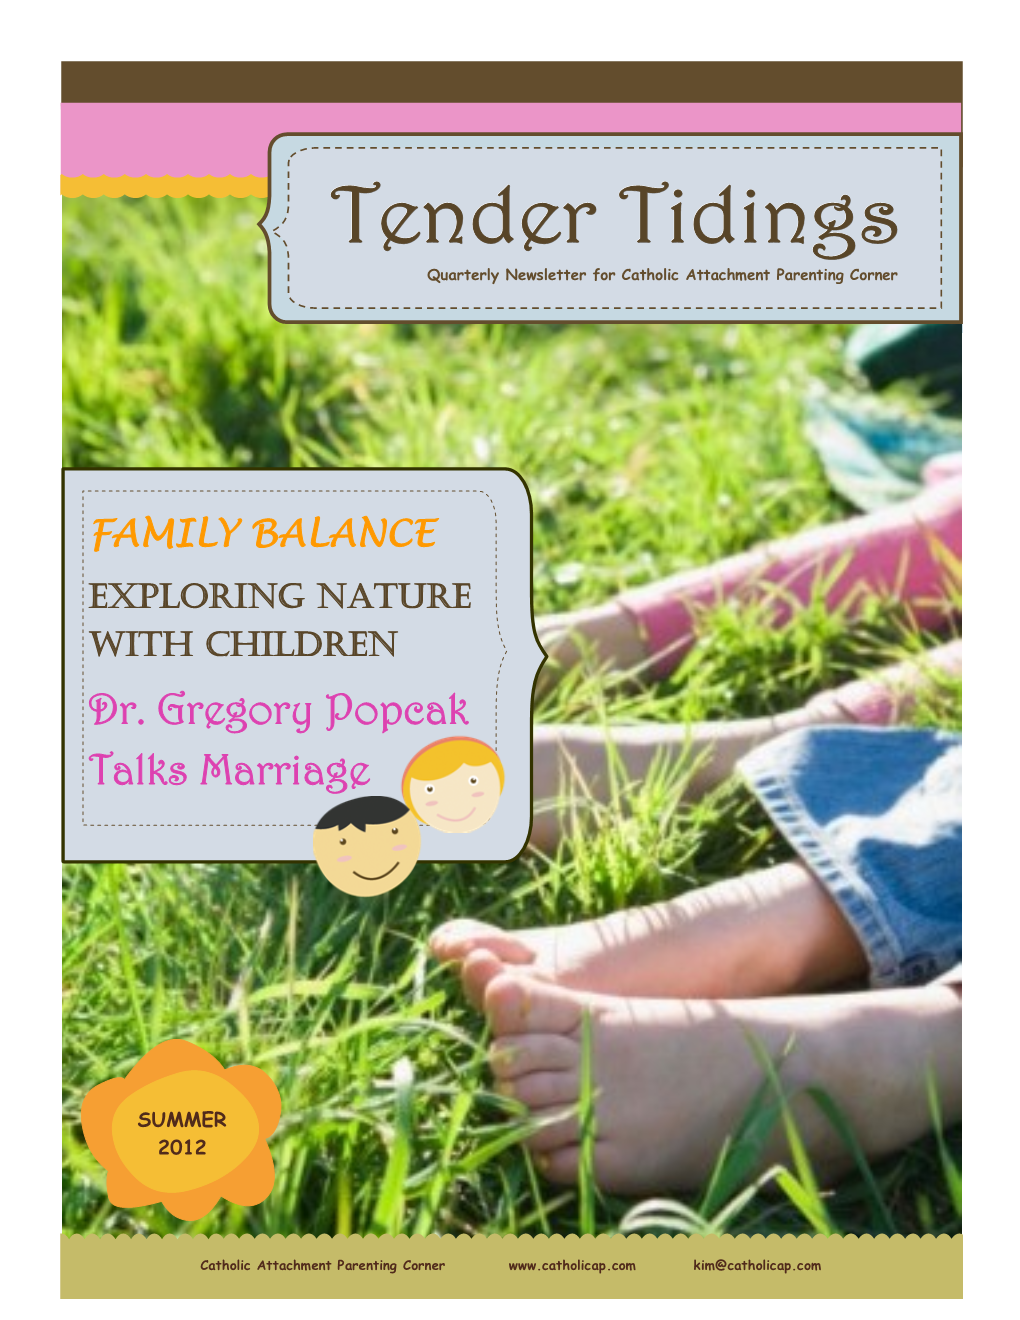 Tender Tidings Quarterly Newsletter for Catholic Attachment Parenting Corner